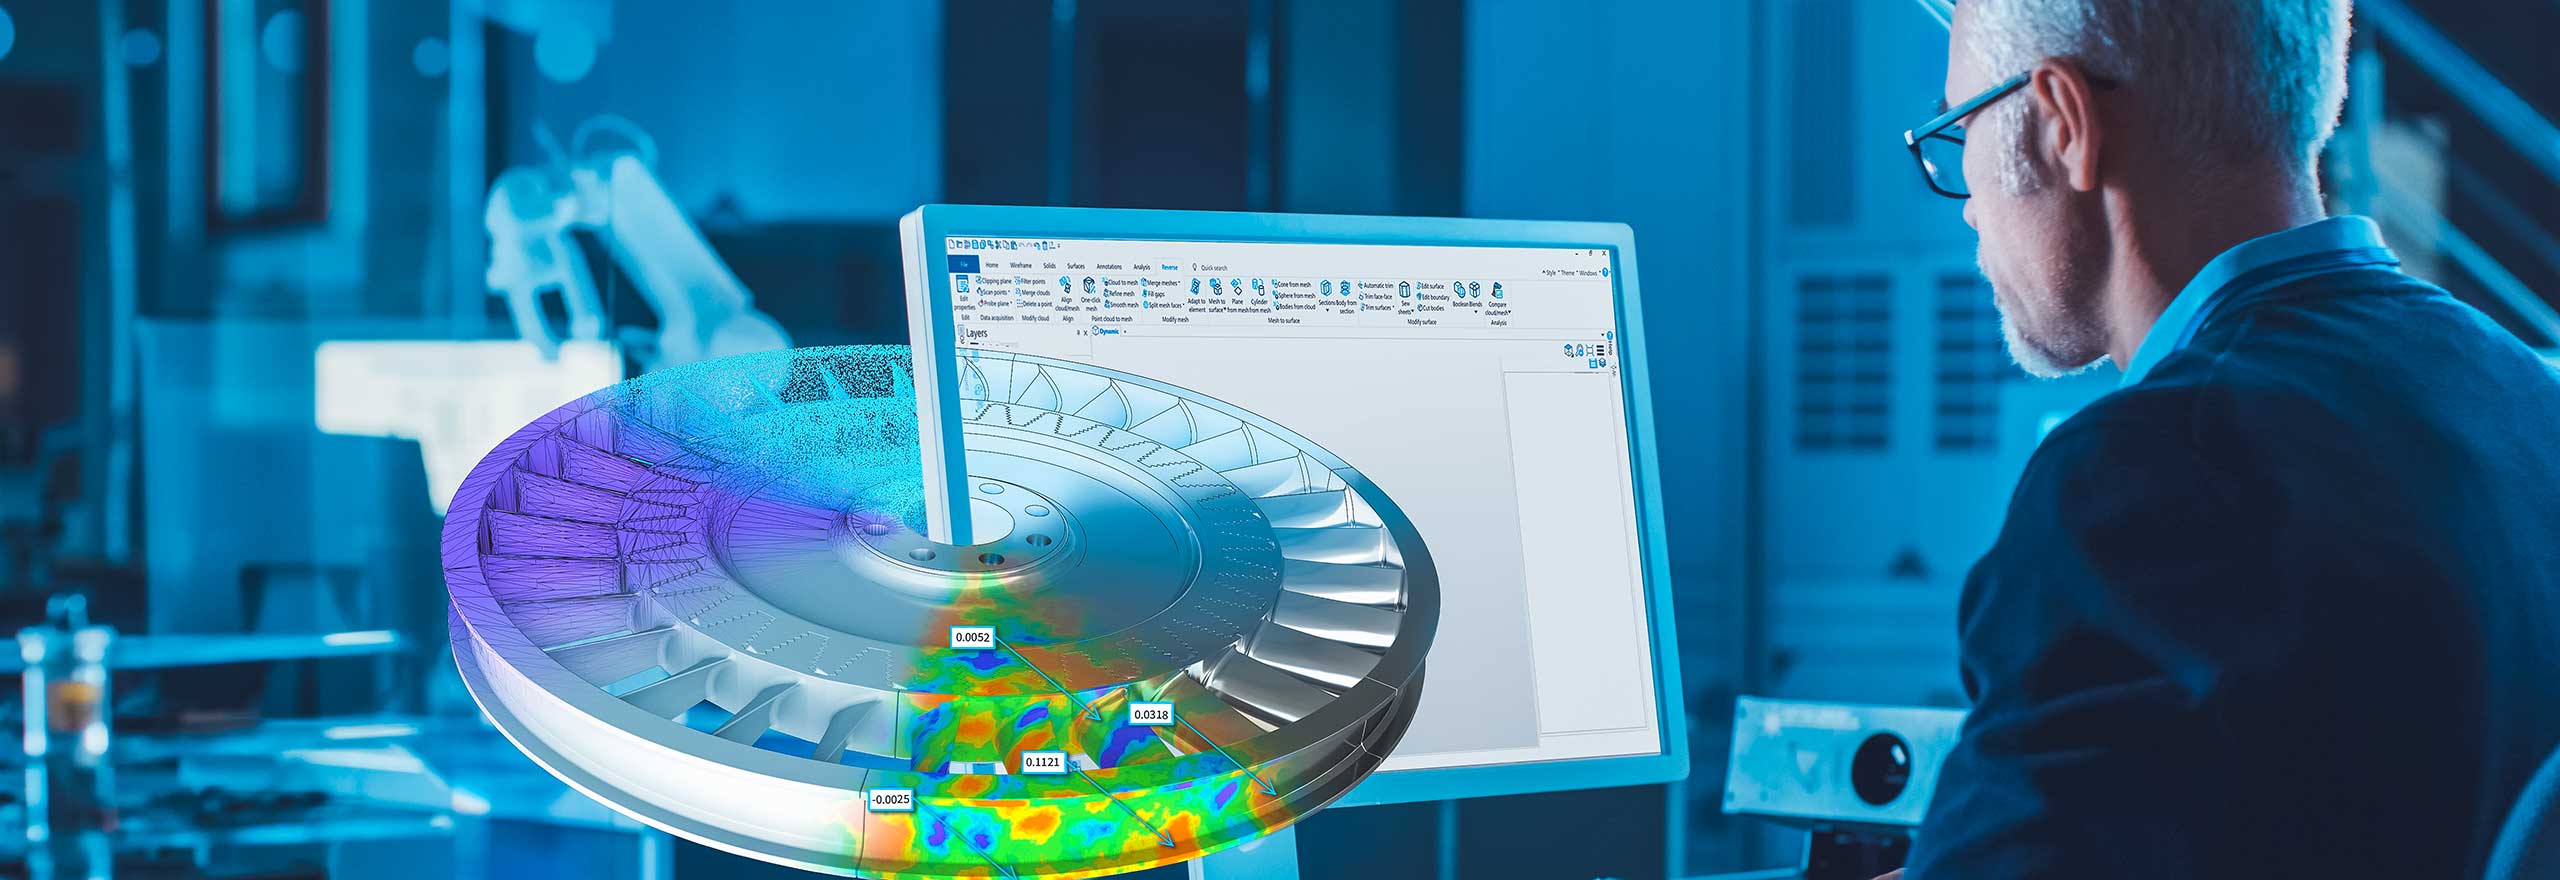 Ingénieur travaillant sur un ordinateur avec un modèle virtuel de la conception du produit qui sort de l’écran.